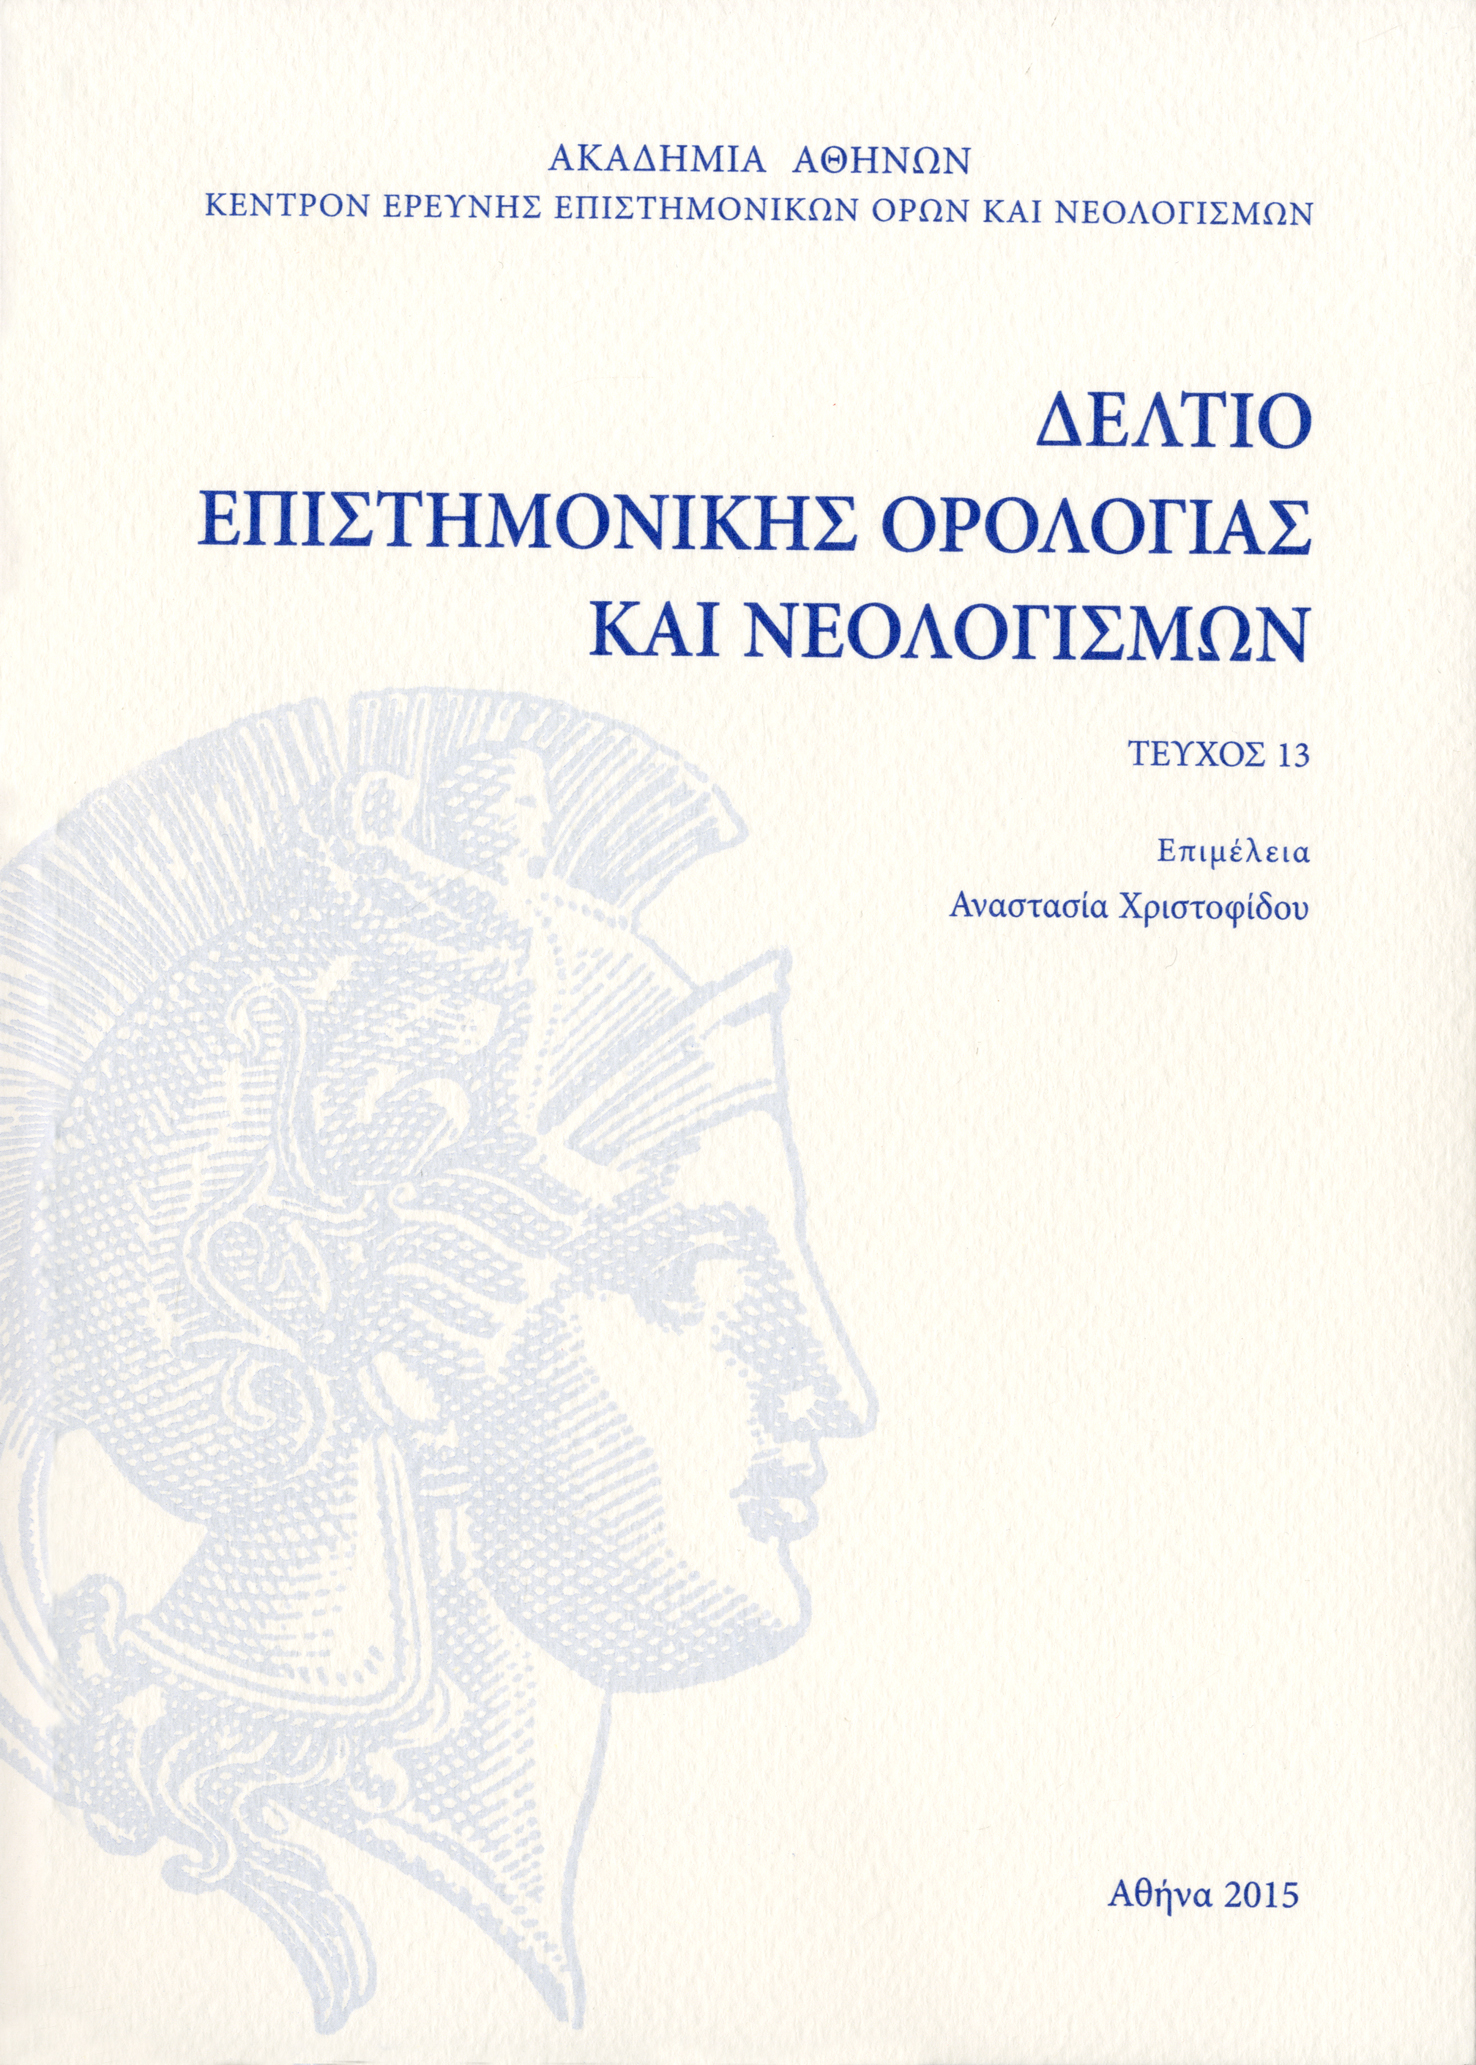 Νέες λέξεις της ελληνικής από την Ακαδημία Αθηνών